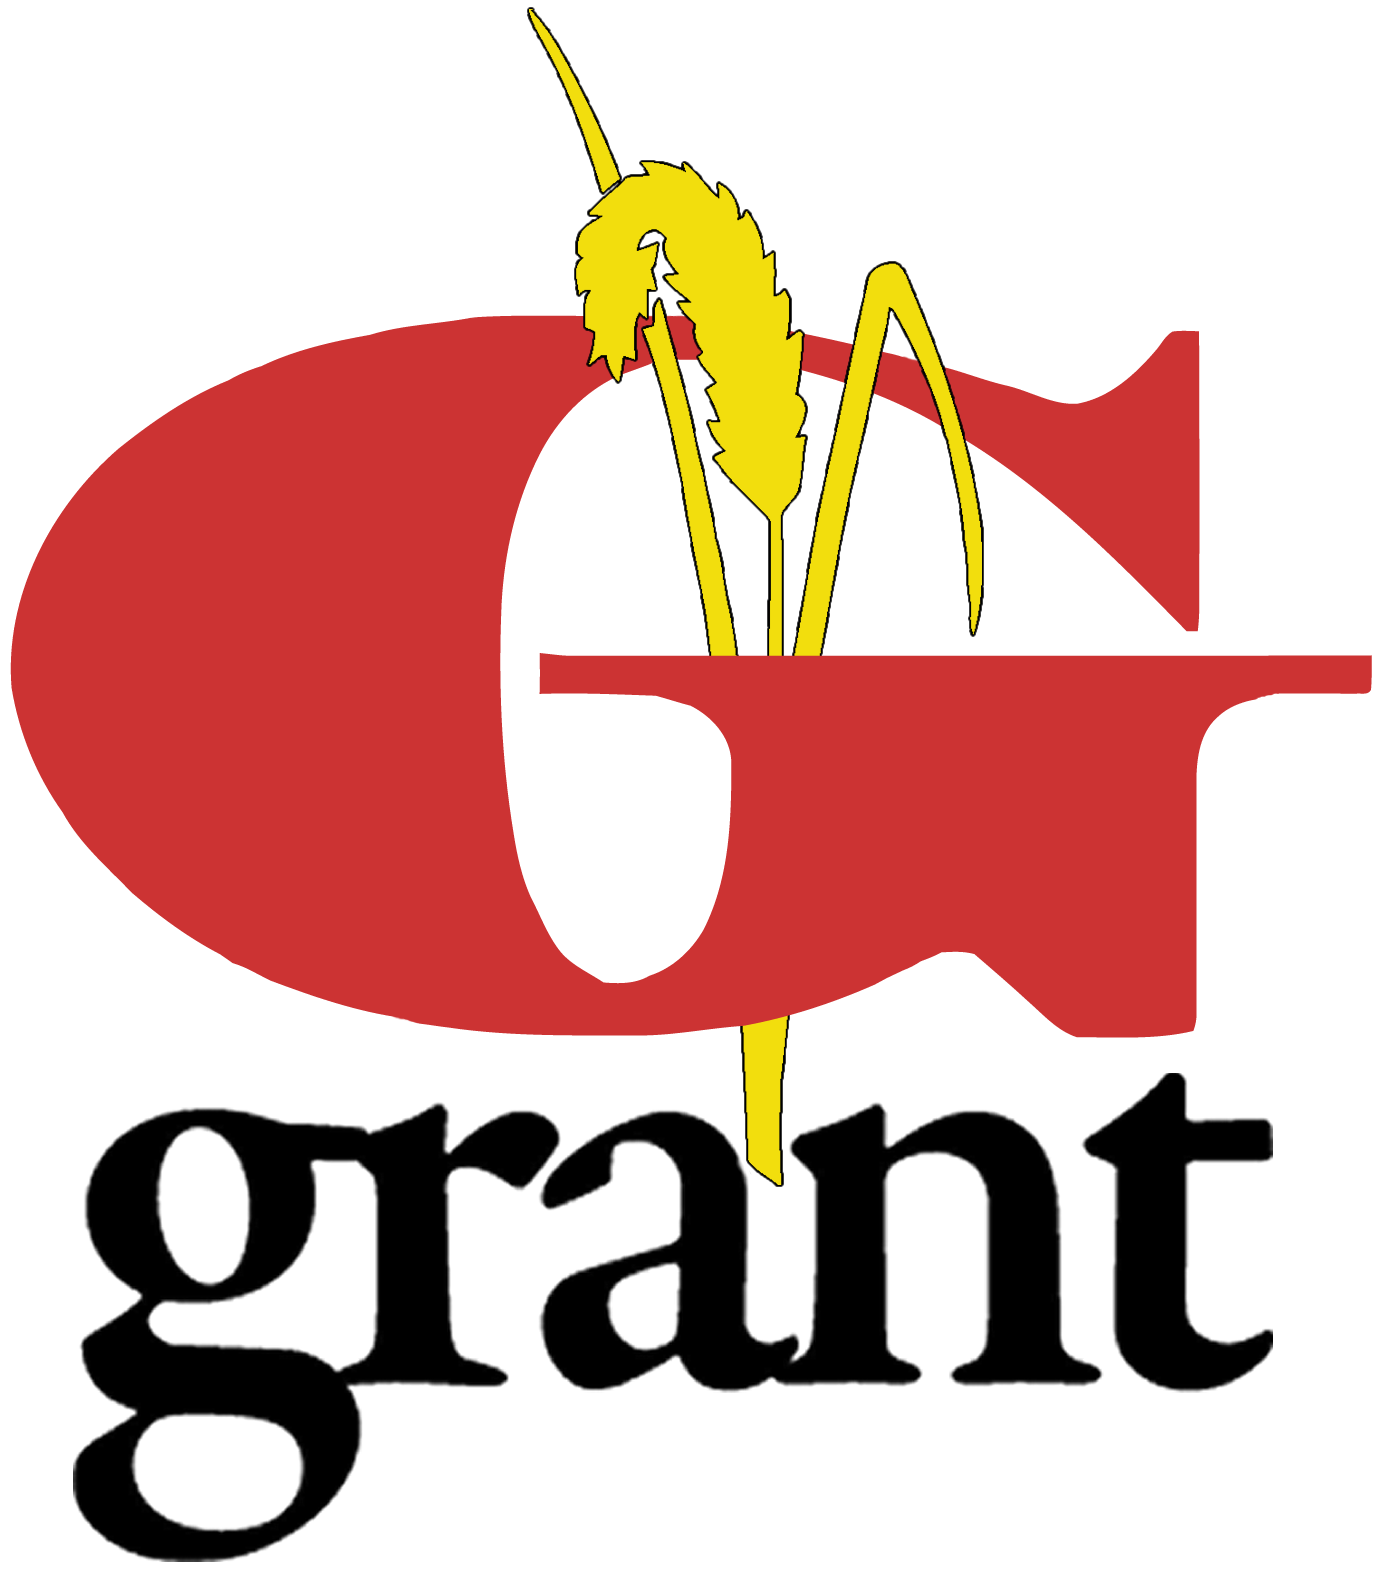 Grant's Farm Clip Art - Exponent Telegram (1382x1569)